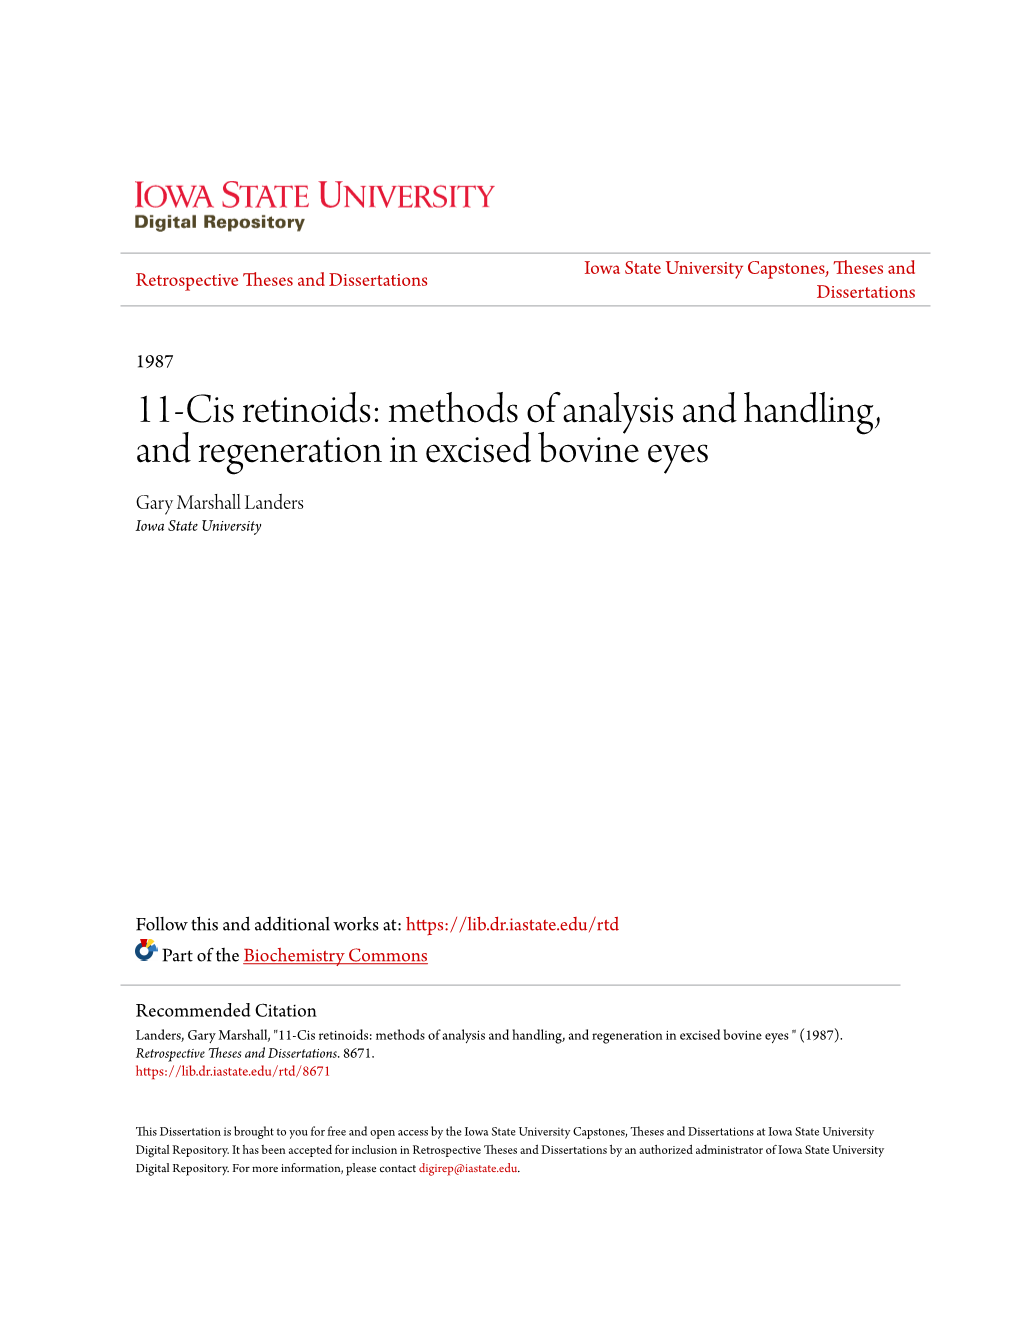 11-Cis Retinoids: Methods of Analysis and Handling, and Regeneration in Excised Bovine Eyes Gary Marshall Landers Iowa State University